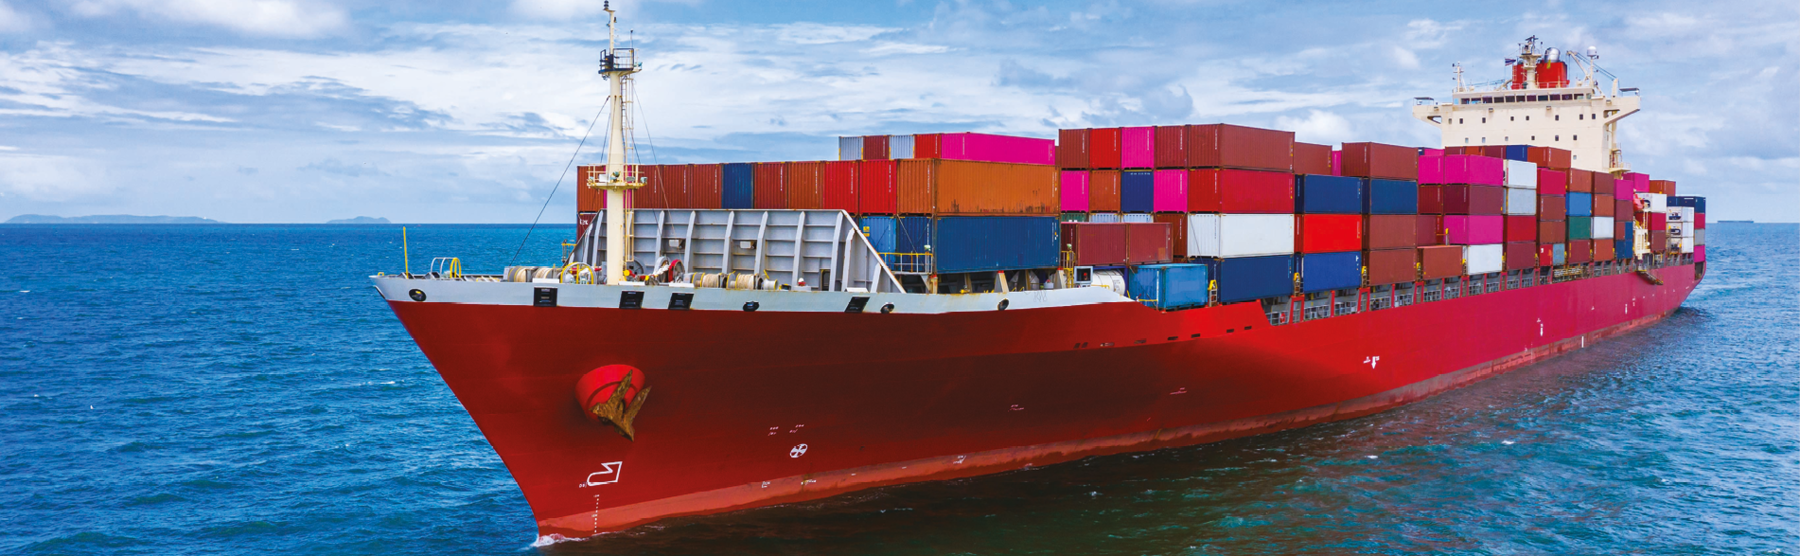 Fotografia. Um navio no mar, com o casco vermelho e contêineres coloridos empilhados em cima.